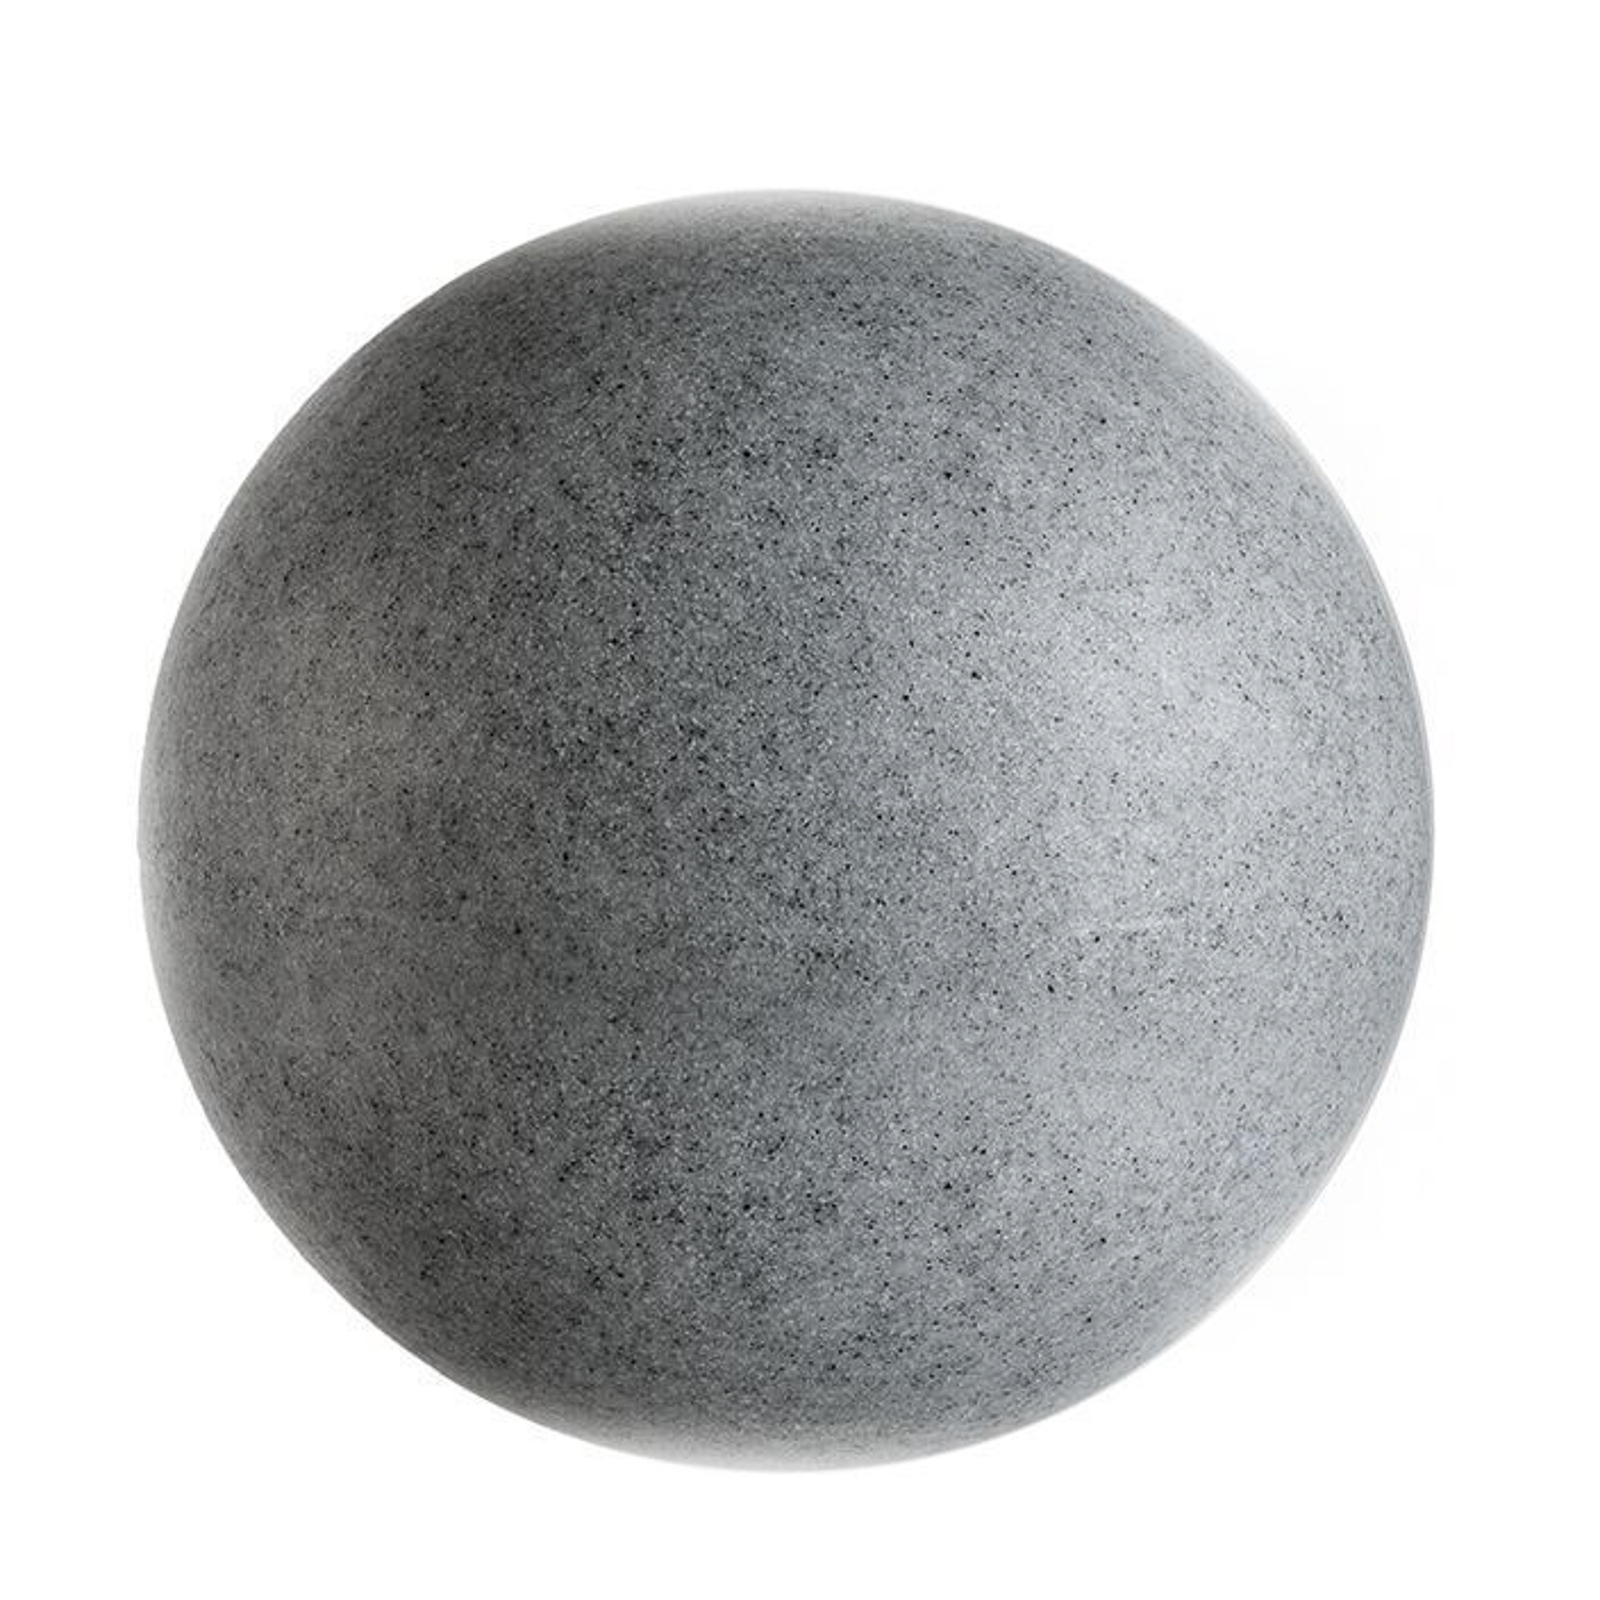 Lampada a globo per esterni con picchetto a terra, granito, Ø 25 cm